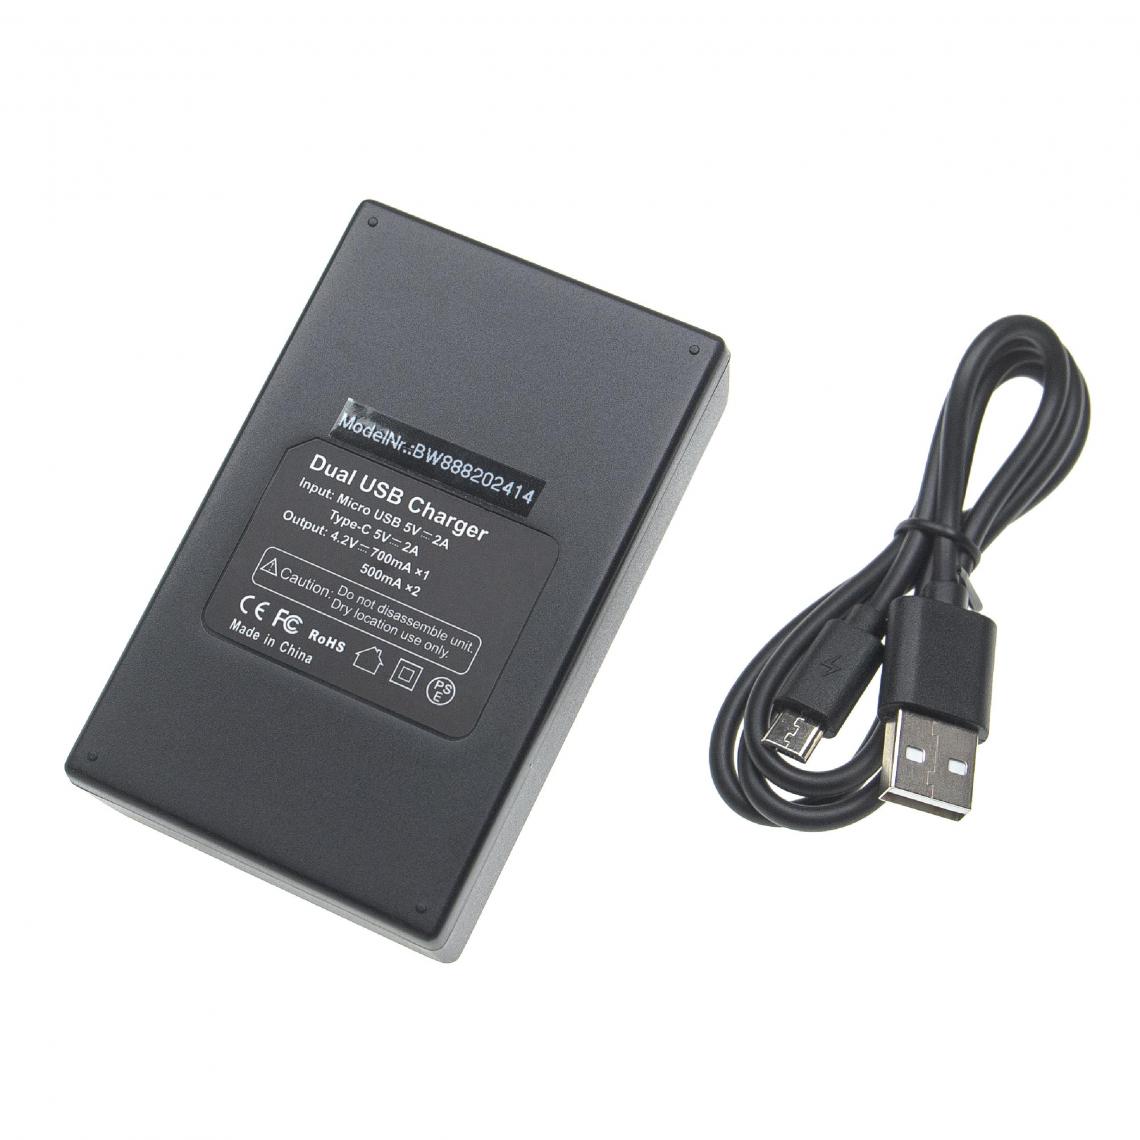 Vhbw - vhbw Chargeur de batterie double USB/micro-USB compatible avec Sony DSC-HX50, DSC-HX50V/B caméra, DSLR, action-cam + câble micro-USB - Batterie Photo & Video